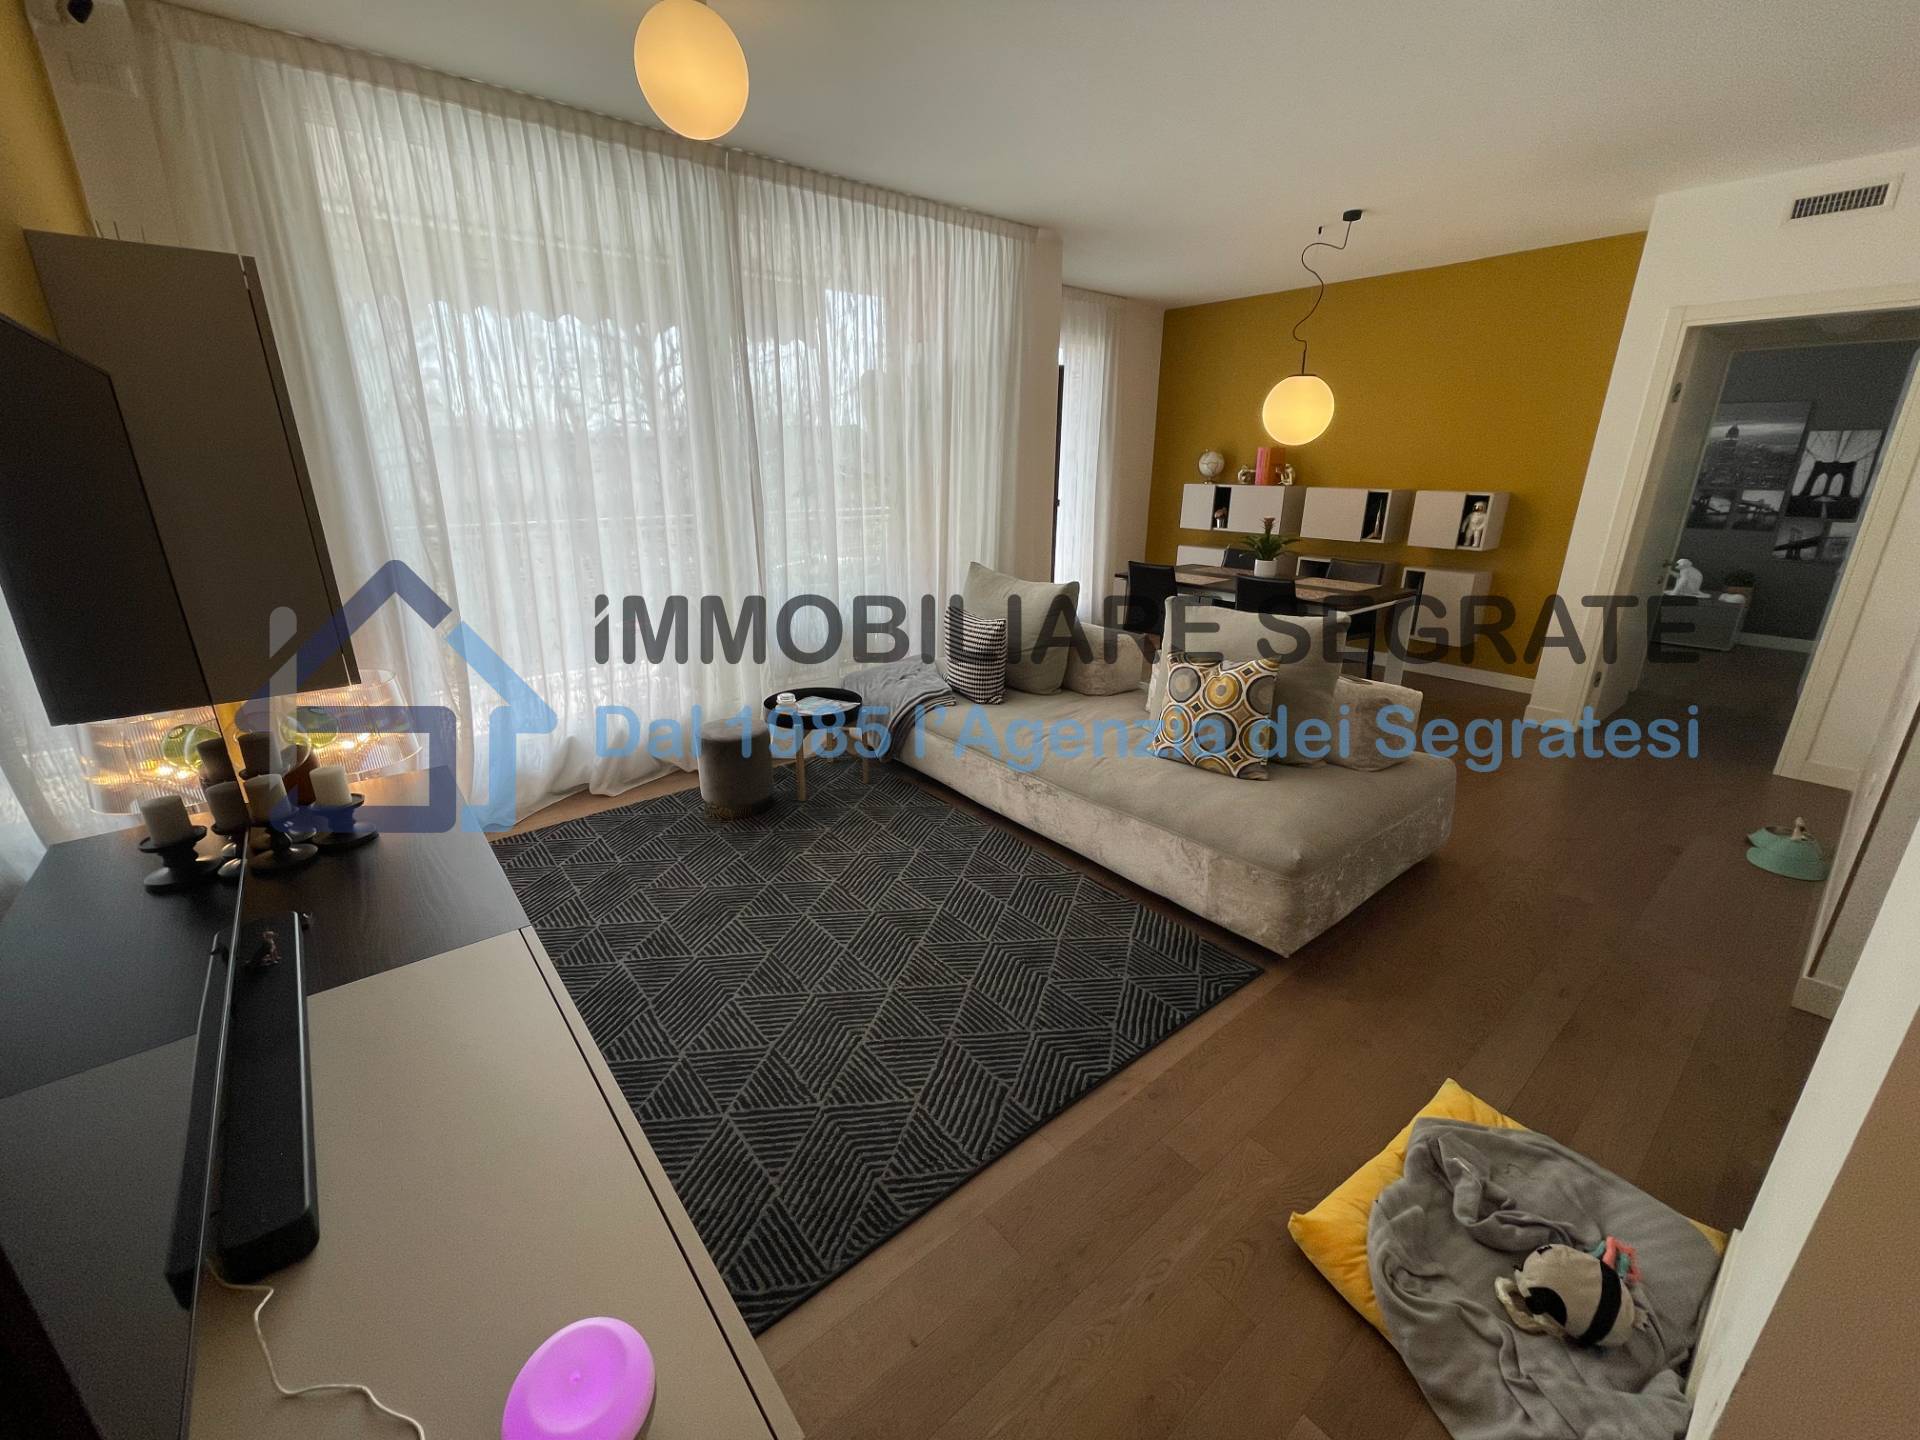 Appartamento in vendita a Segrate, 4 locali, zona Località: Centro, prezzo € 475.000 | PortaleAgenzieImmobiliari.it